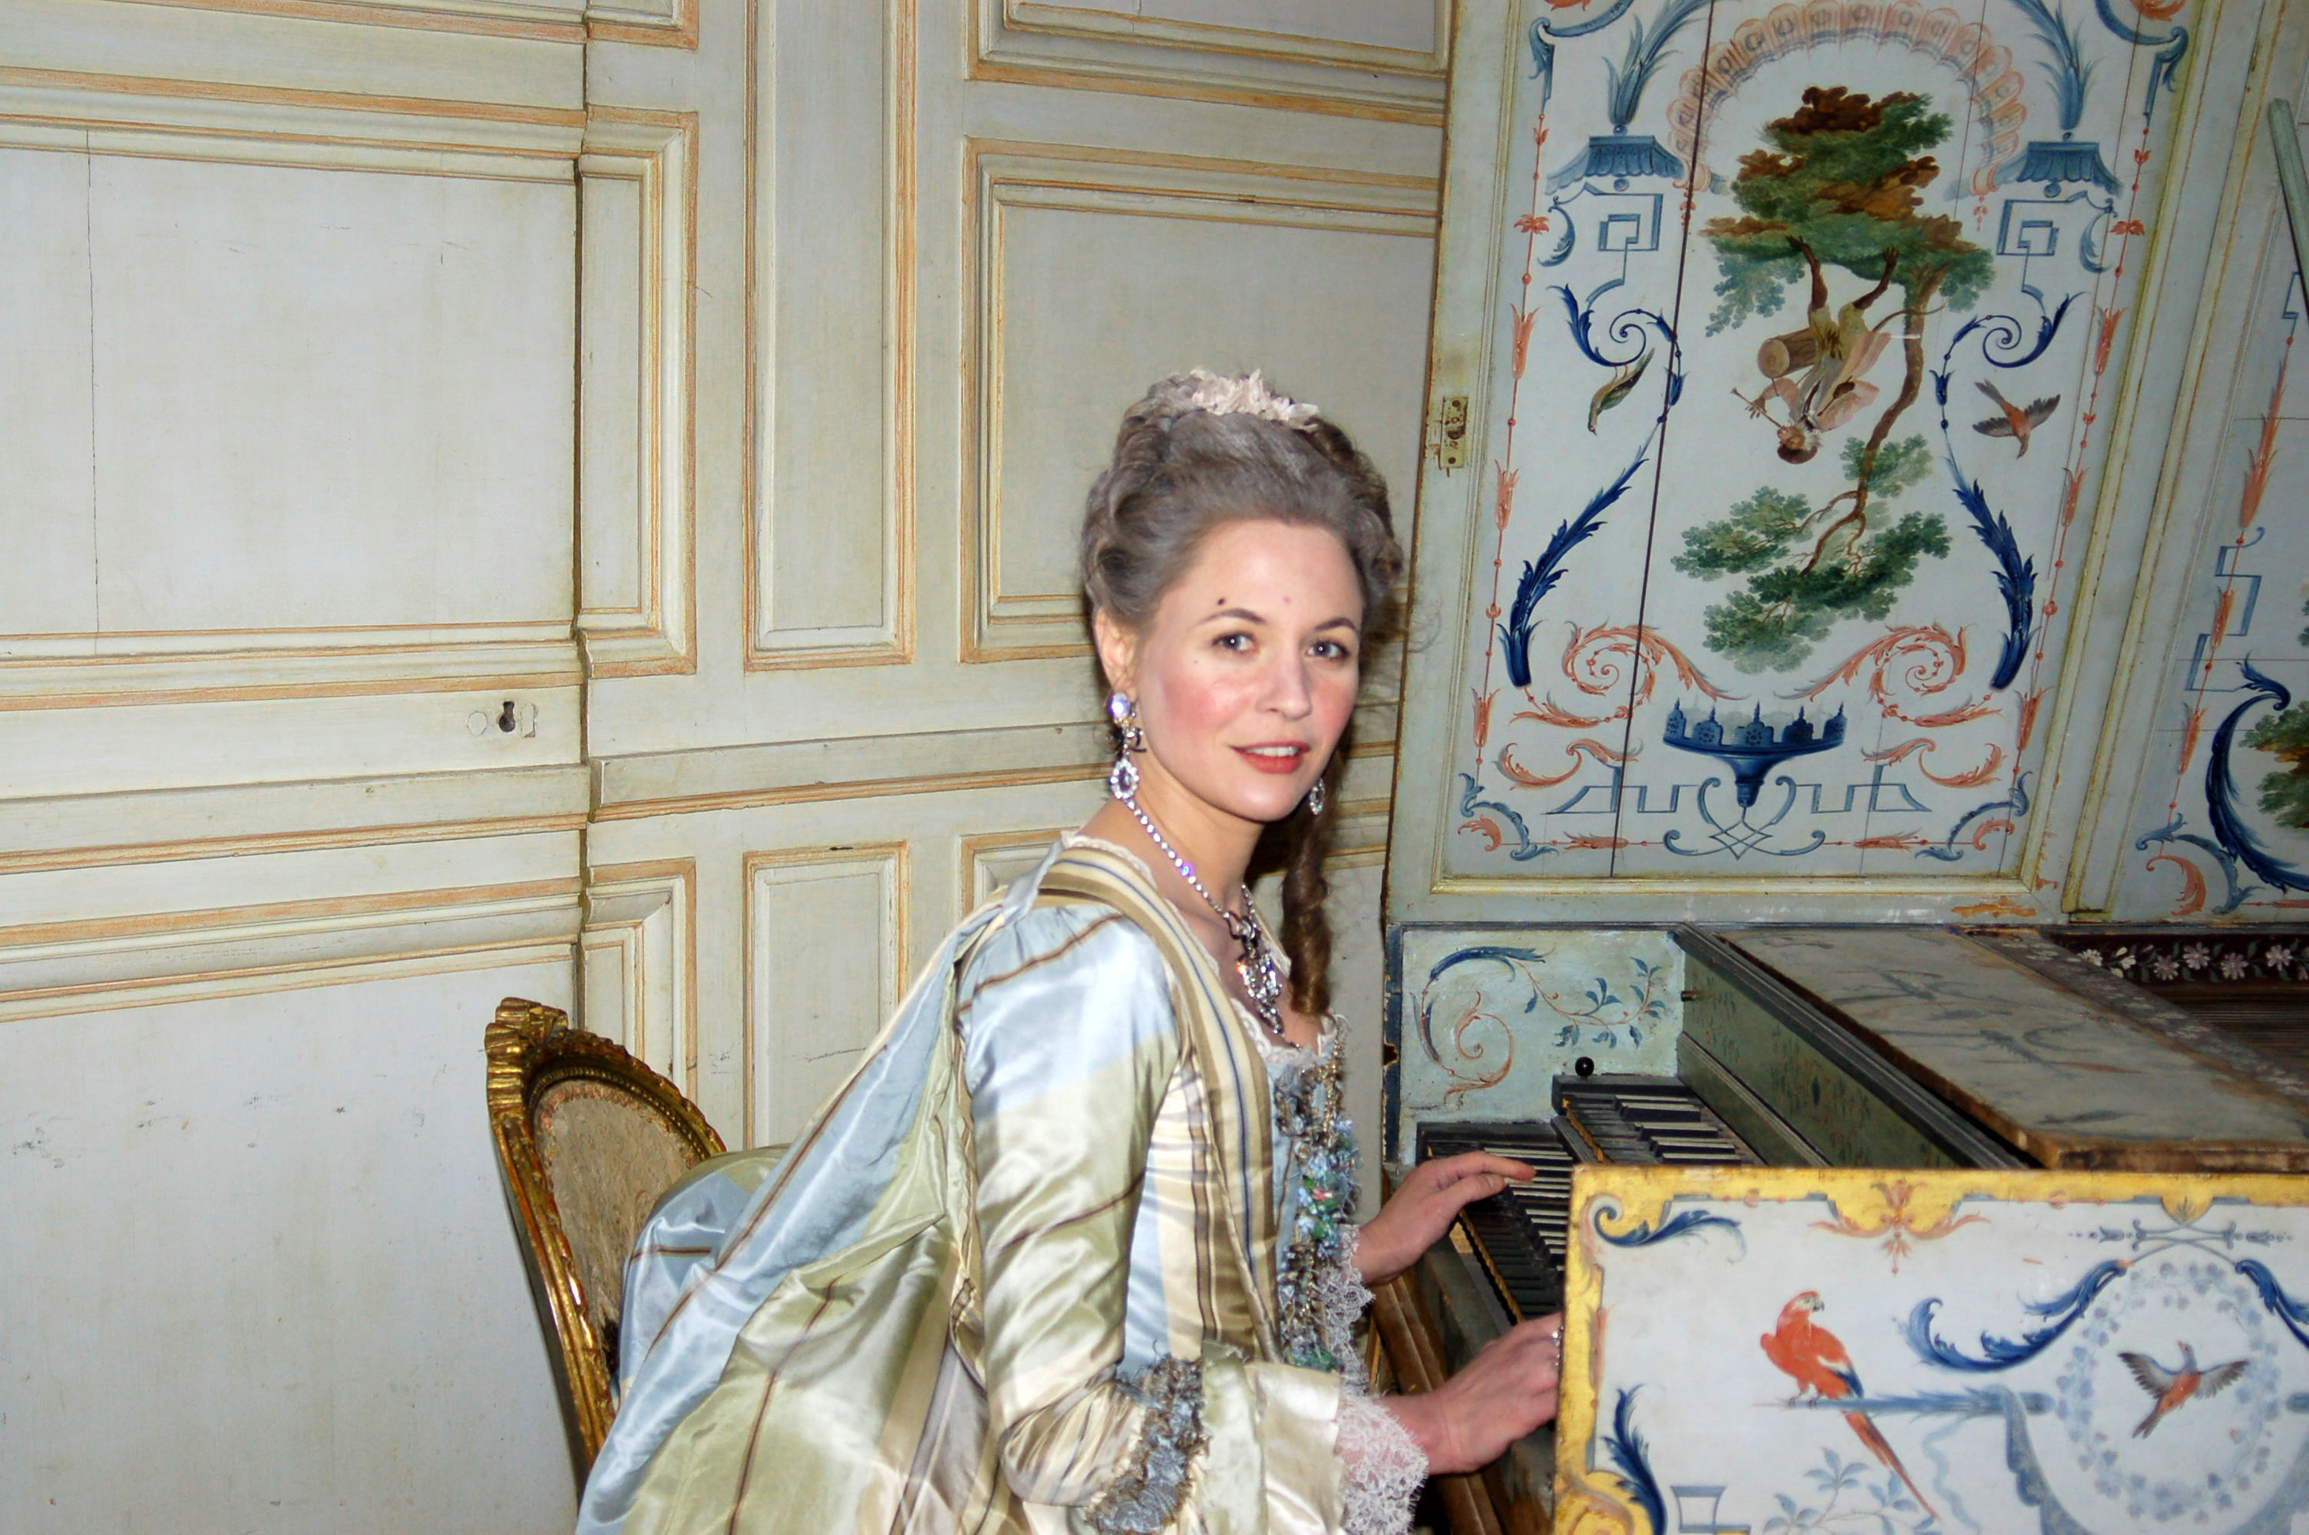 Julia Thurnau as Marquise de Cr. equis in 